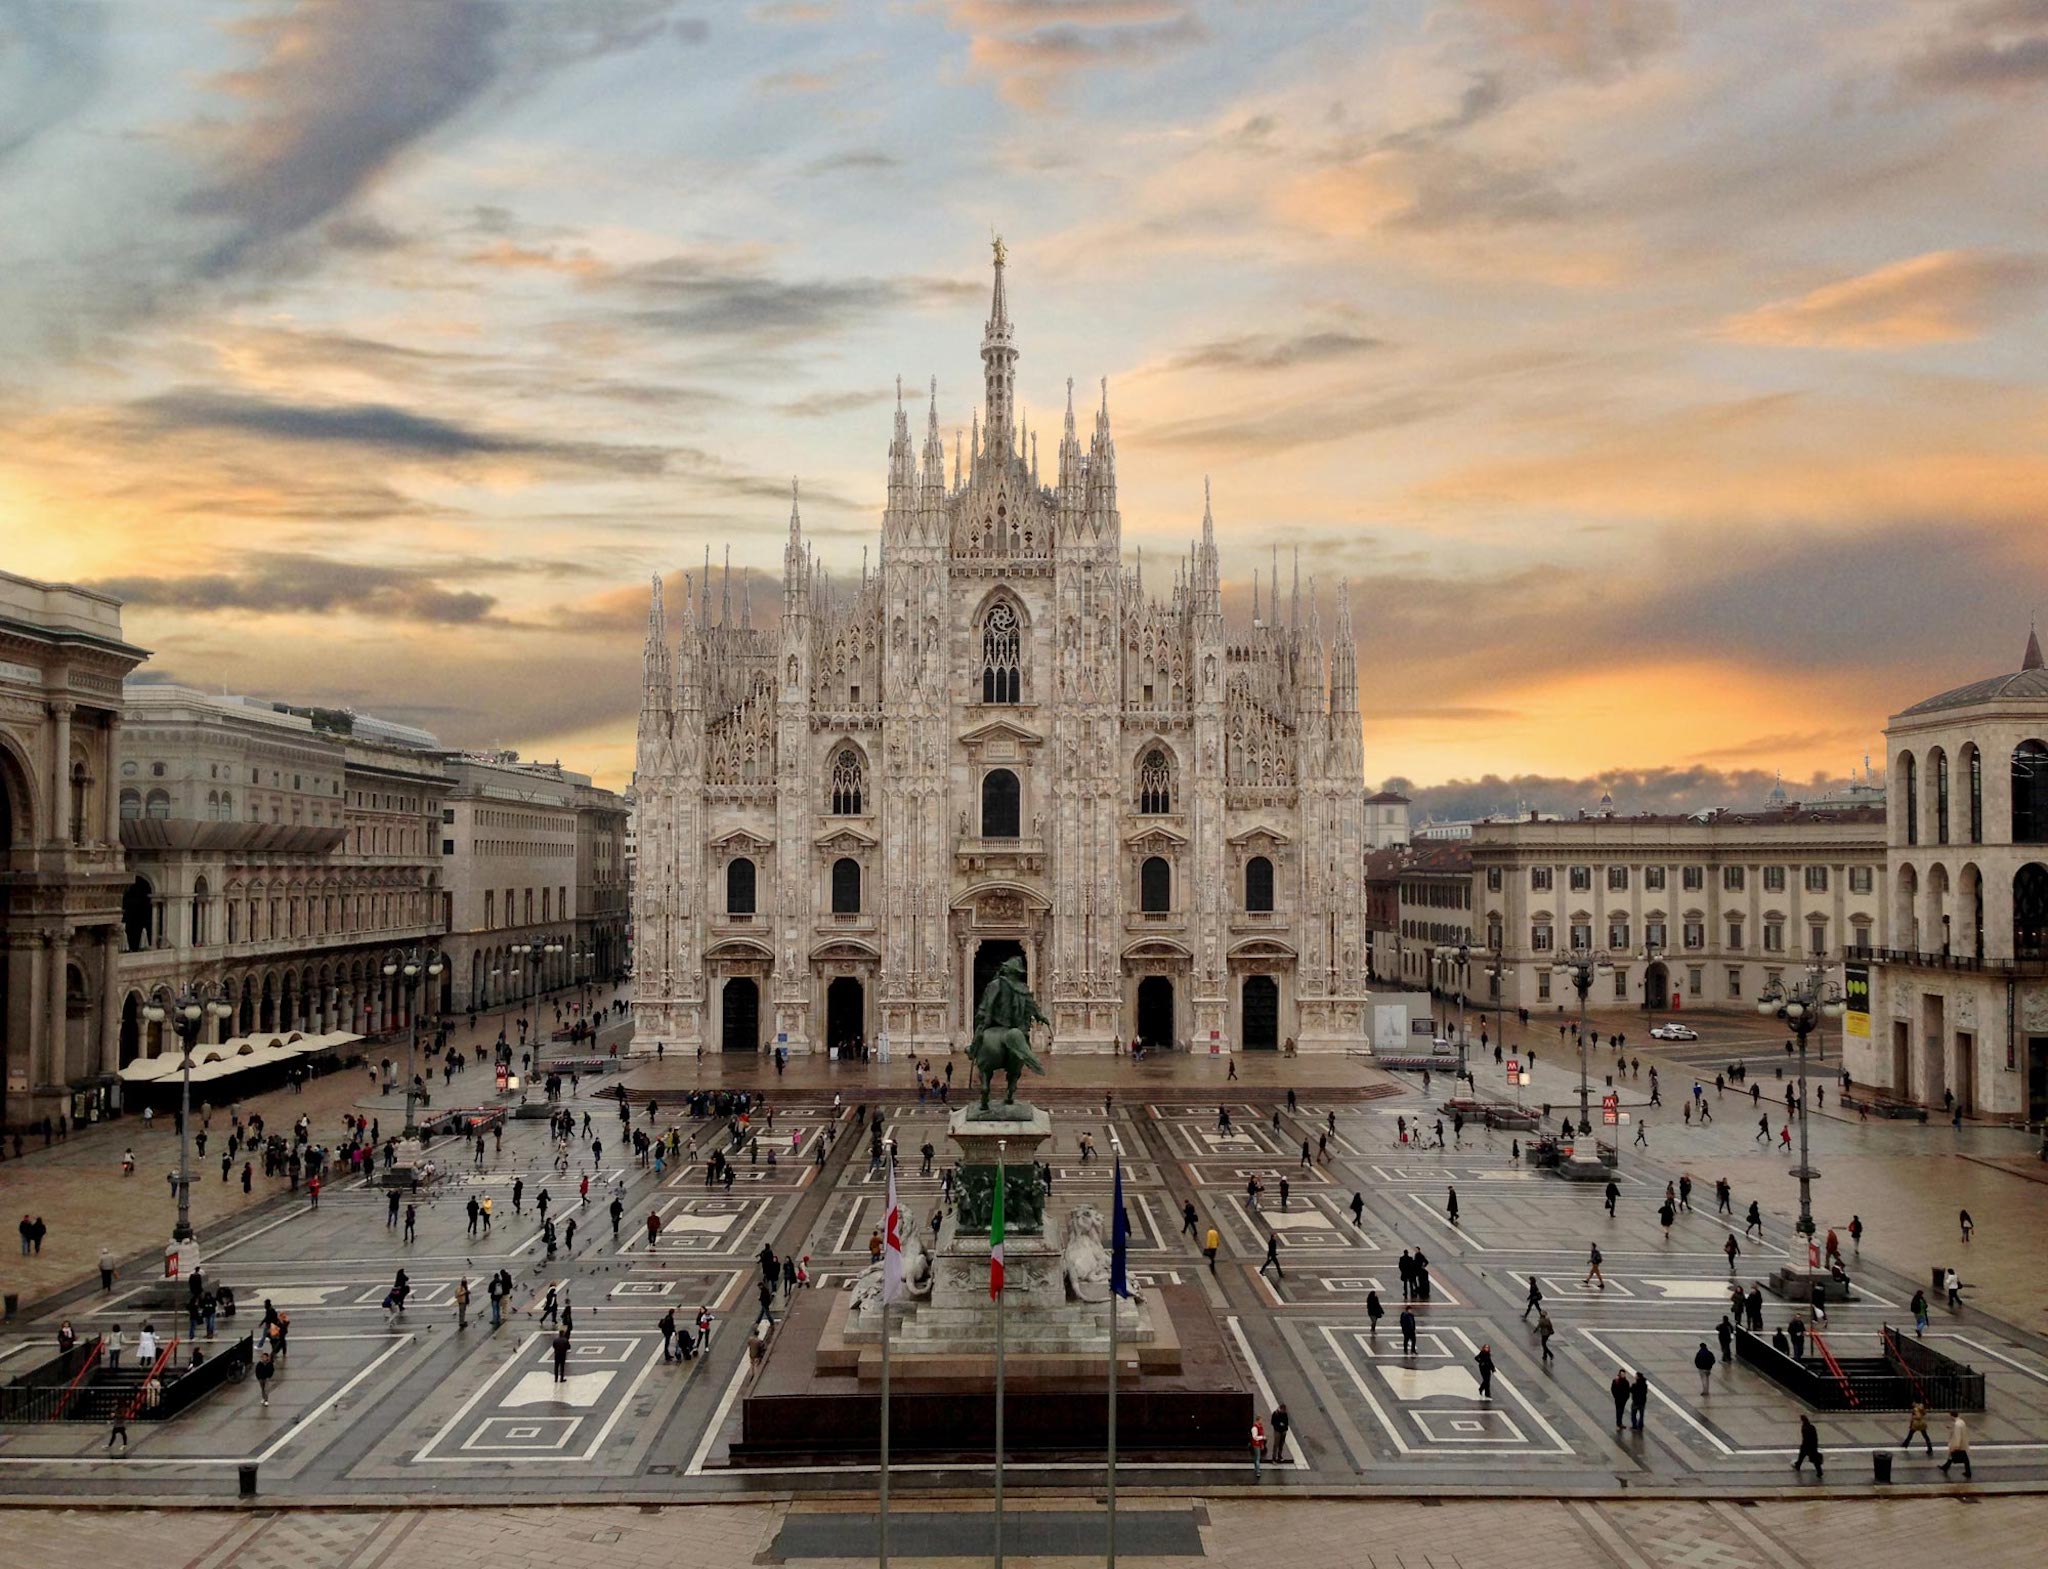 Nhà thờ Duomo - xây dựng mất 579 năm, liên tục phải tu sửa nhưng người  Milan vẫn yêu mến